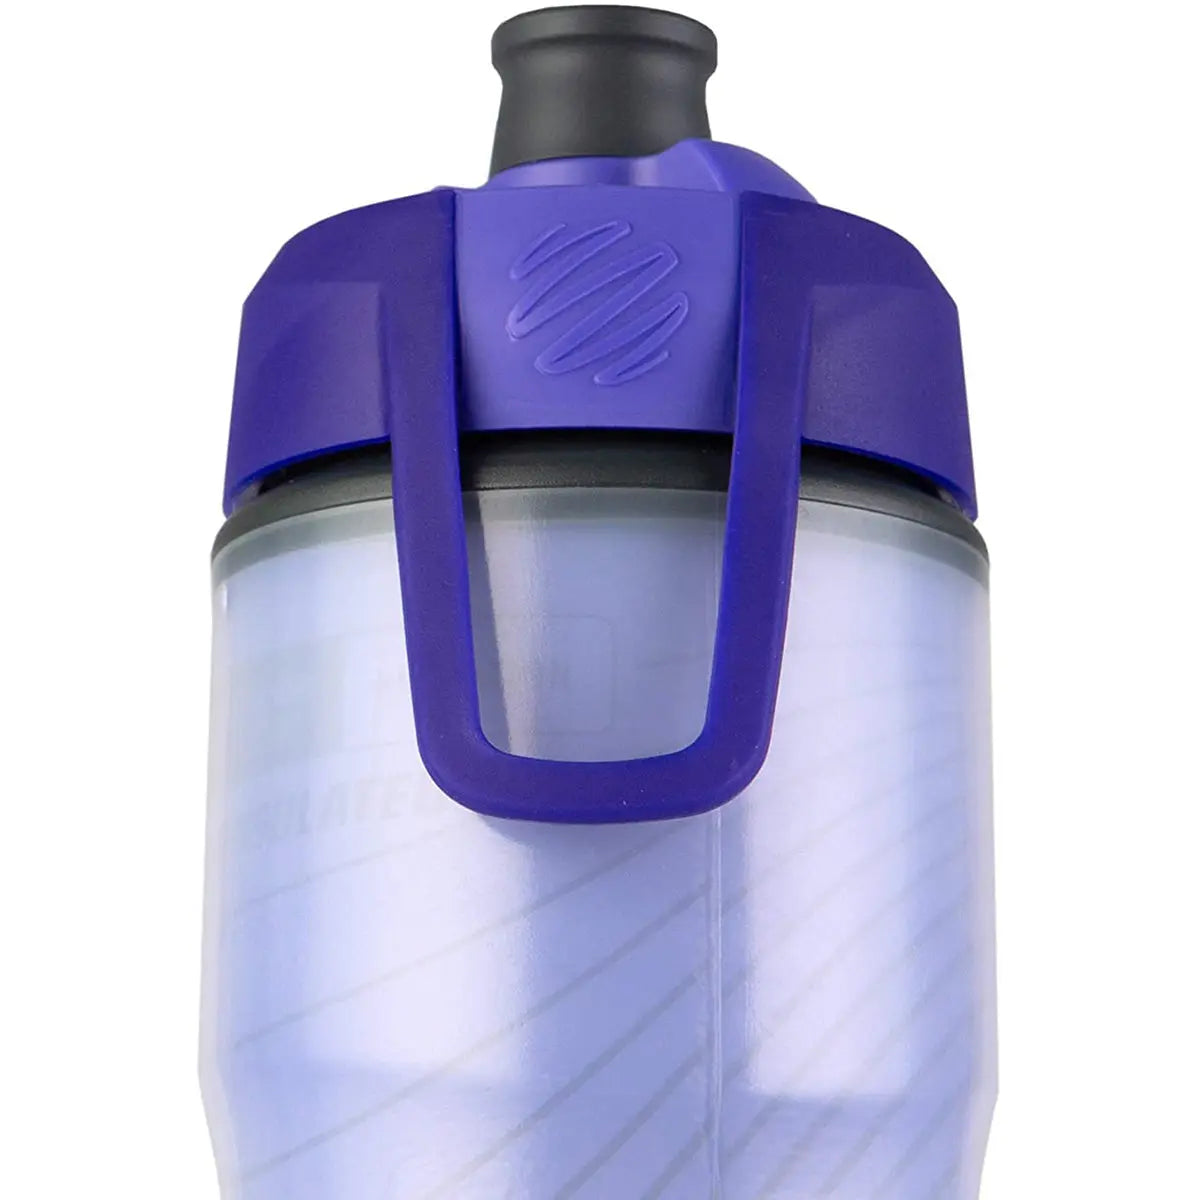 Blender Bottle Halex 24 oz. Insulated Squeeze Bike Water Bottle Blender Bottle